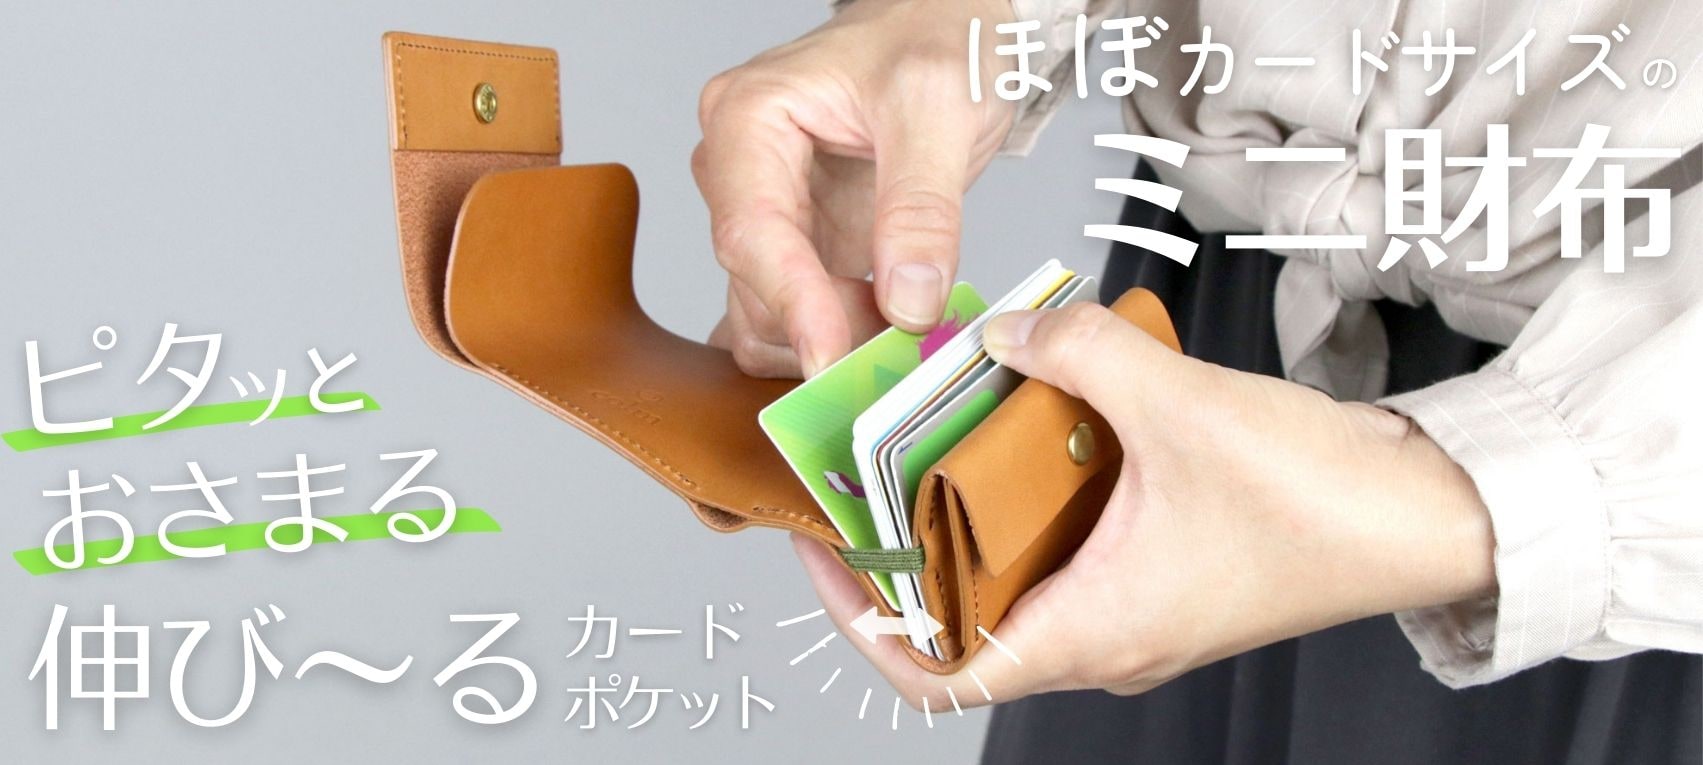 ほぼカードサイズのコンパクトなミニ財布